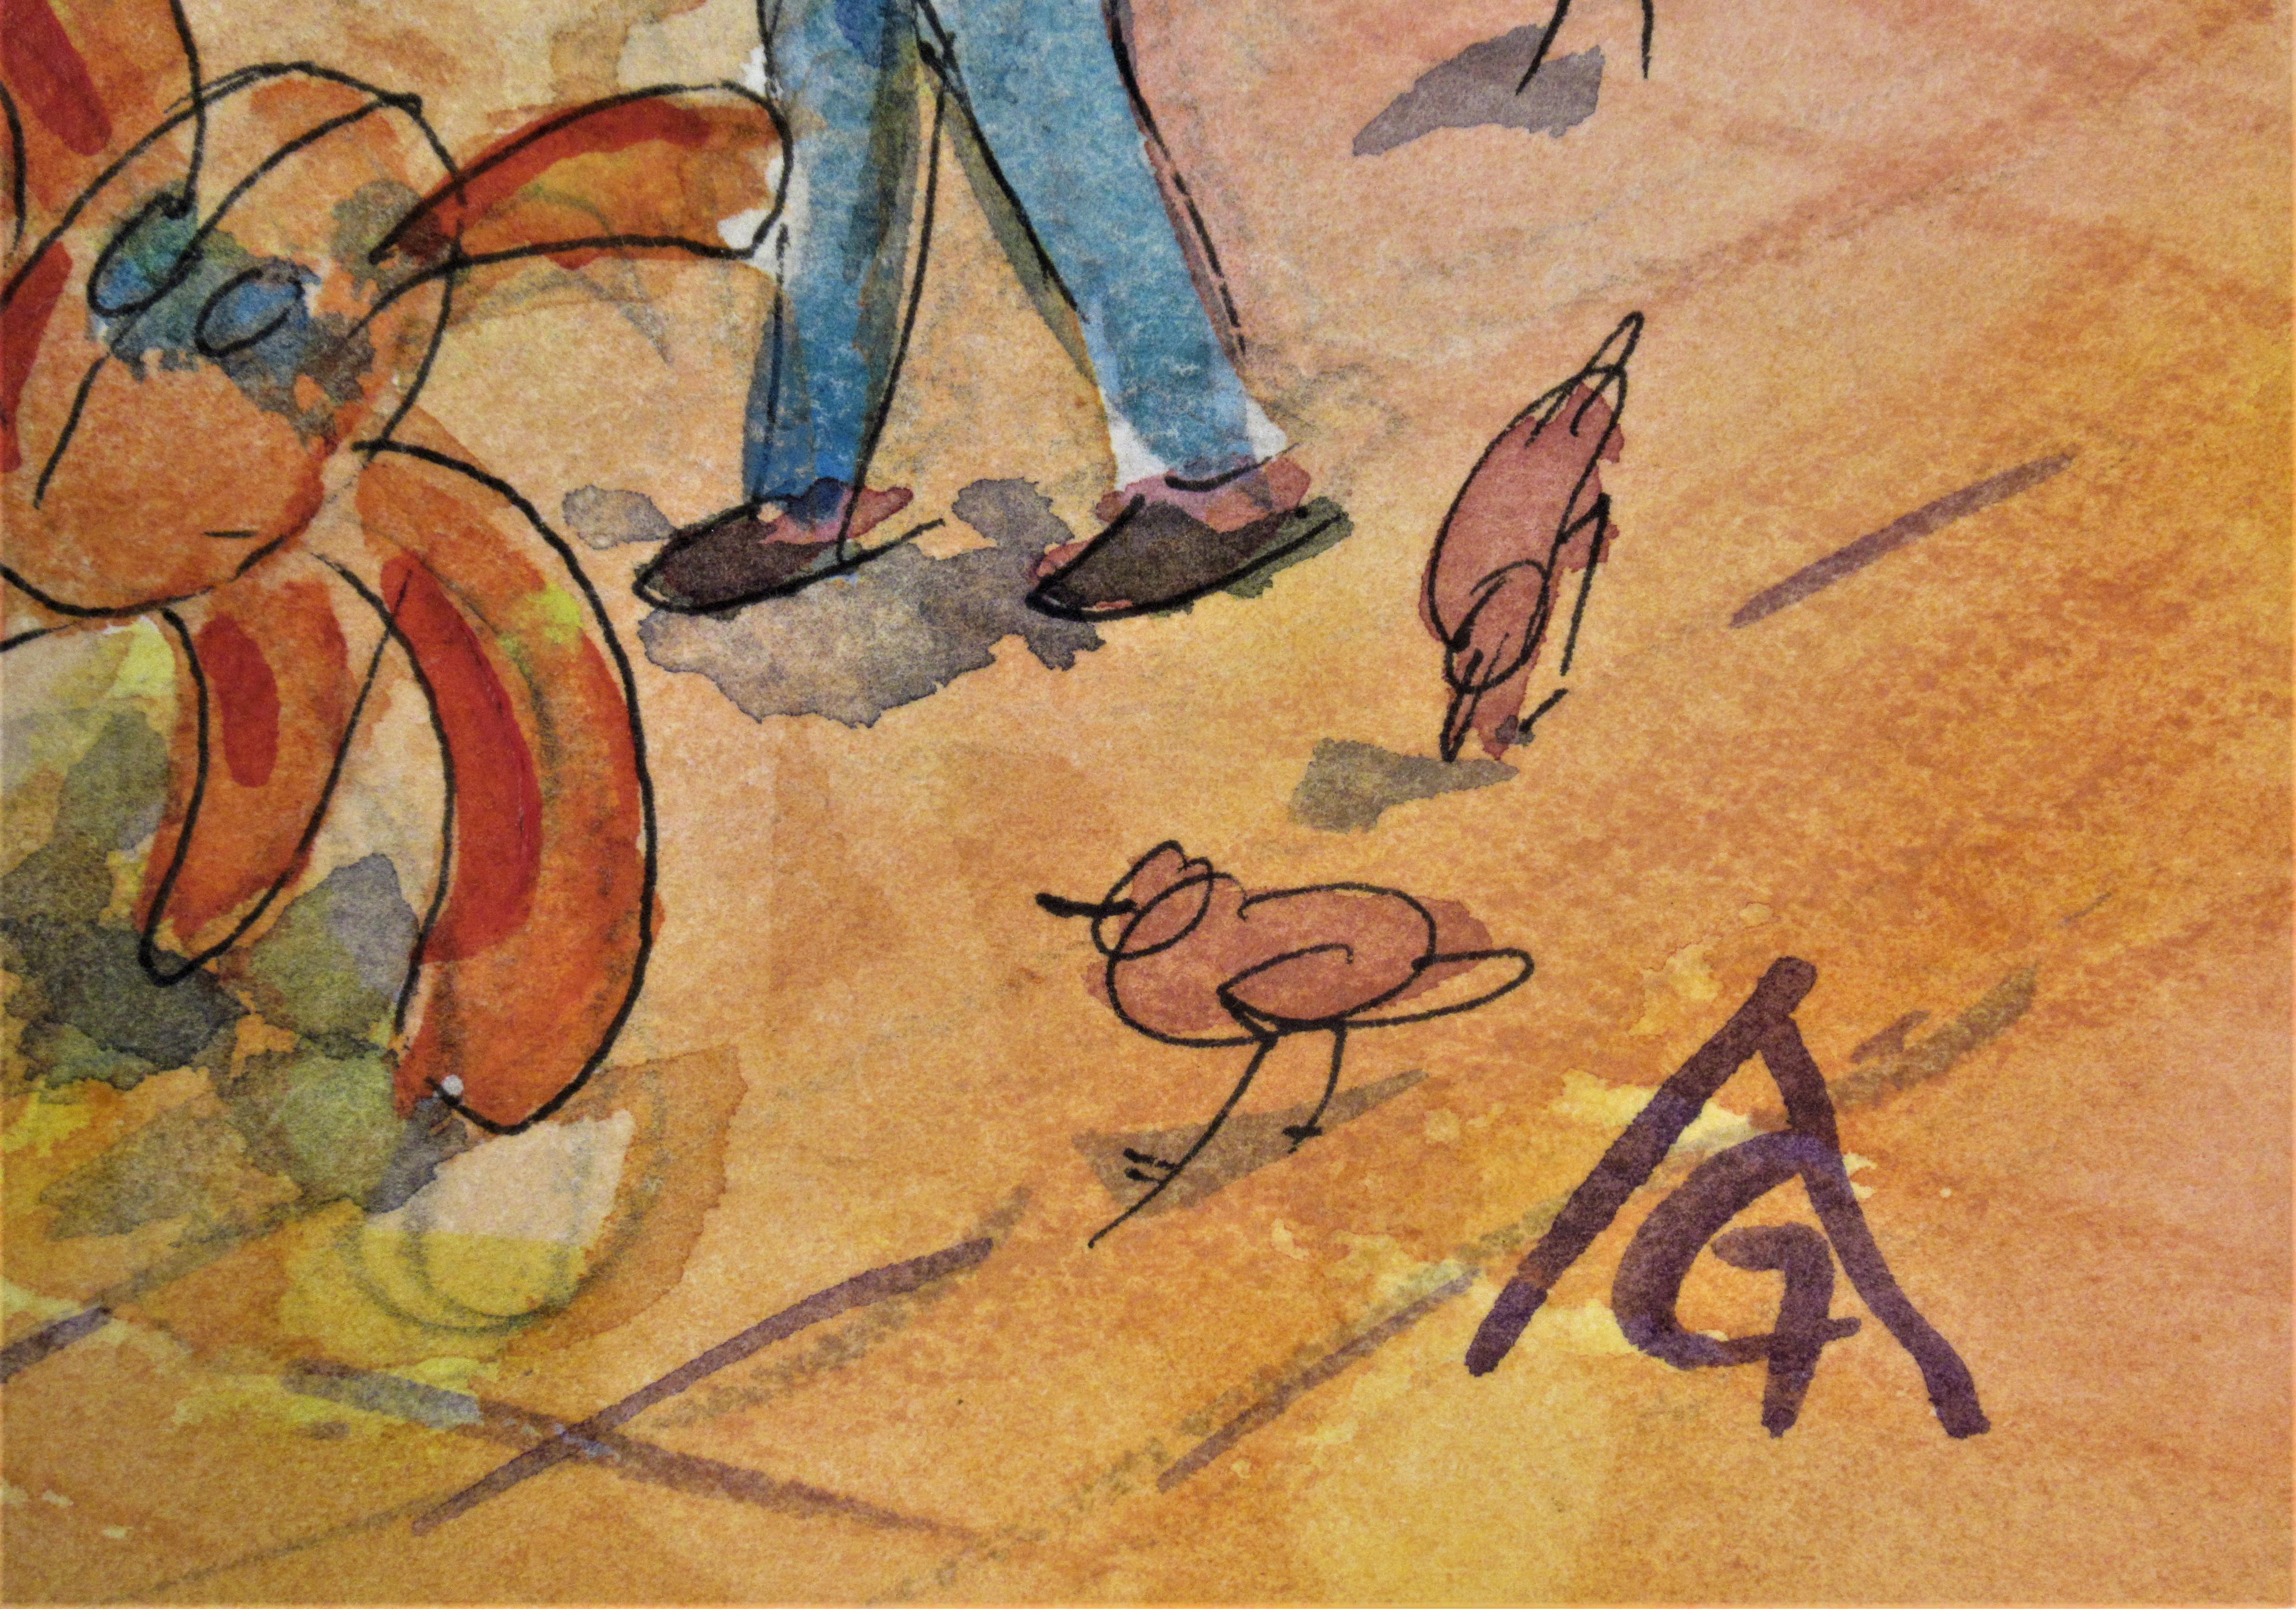 Künstler:  Arnold Grossman (Amerikaner, 1923-2016)
Titel: Oaxaca Spielzeit
Jahr:  c.1980
Medium:	Aquarell
Papier:  Aquarellpapier
Bildgröße: 12,25 x 16 Zoll
papierformat: 12,25 x 16 Zoll
Unterschrift:  Rechts unten vom Künstler signiert, auf der